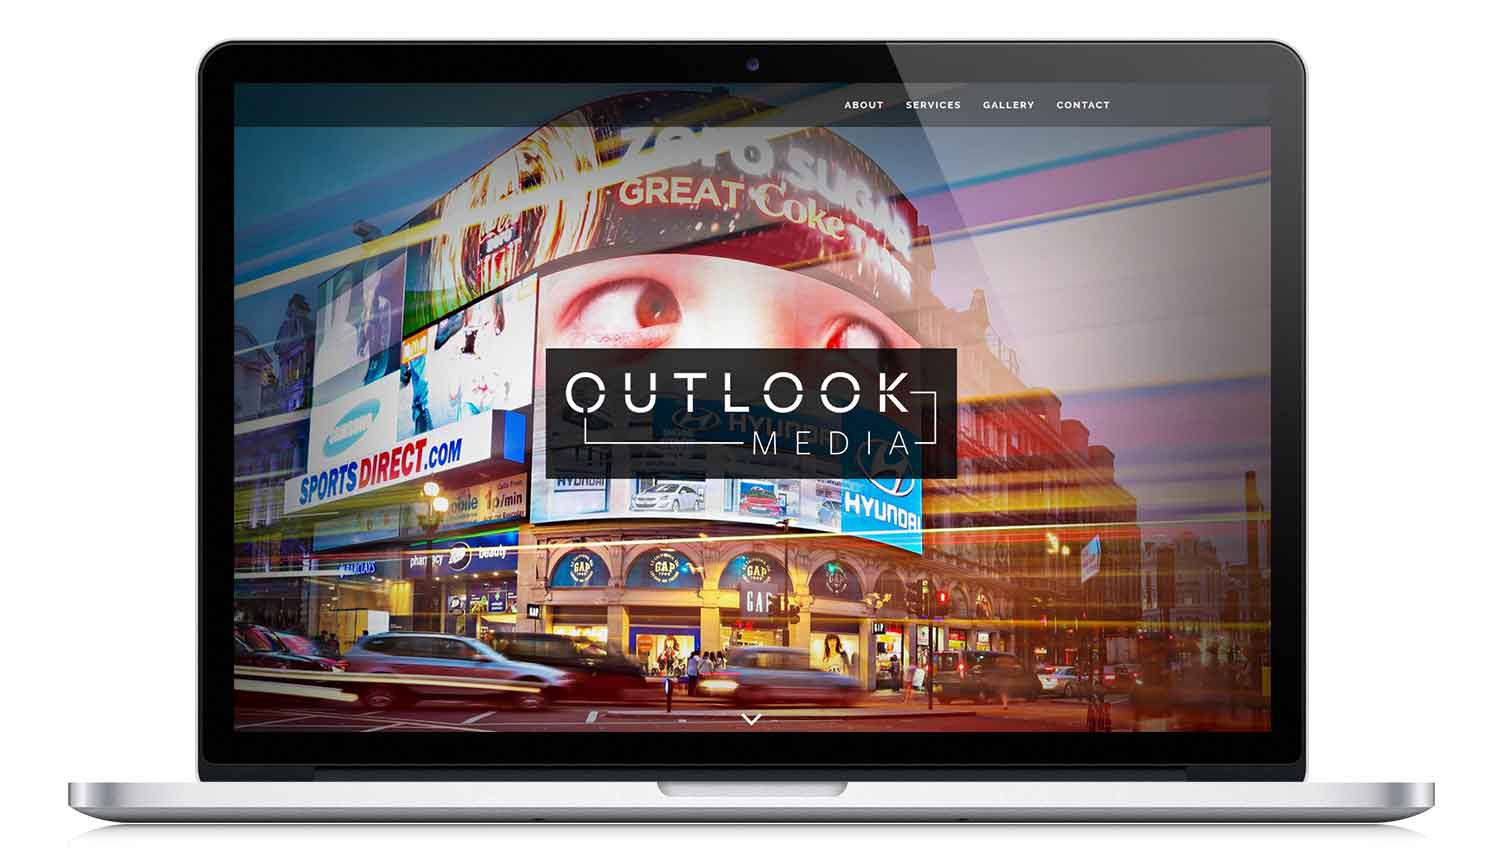 Outlook Media responsive website design: www.outlookmedia.co.uk